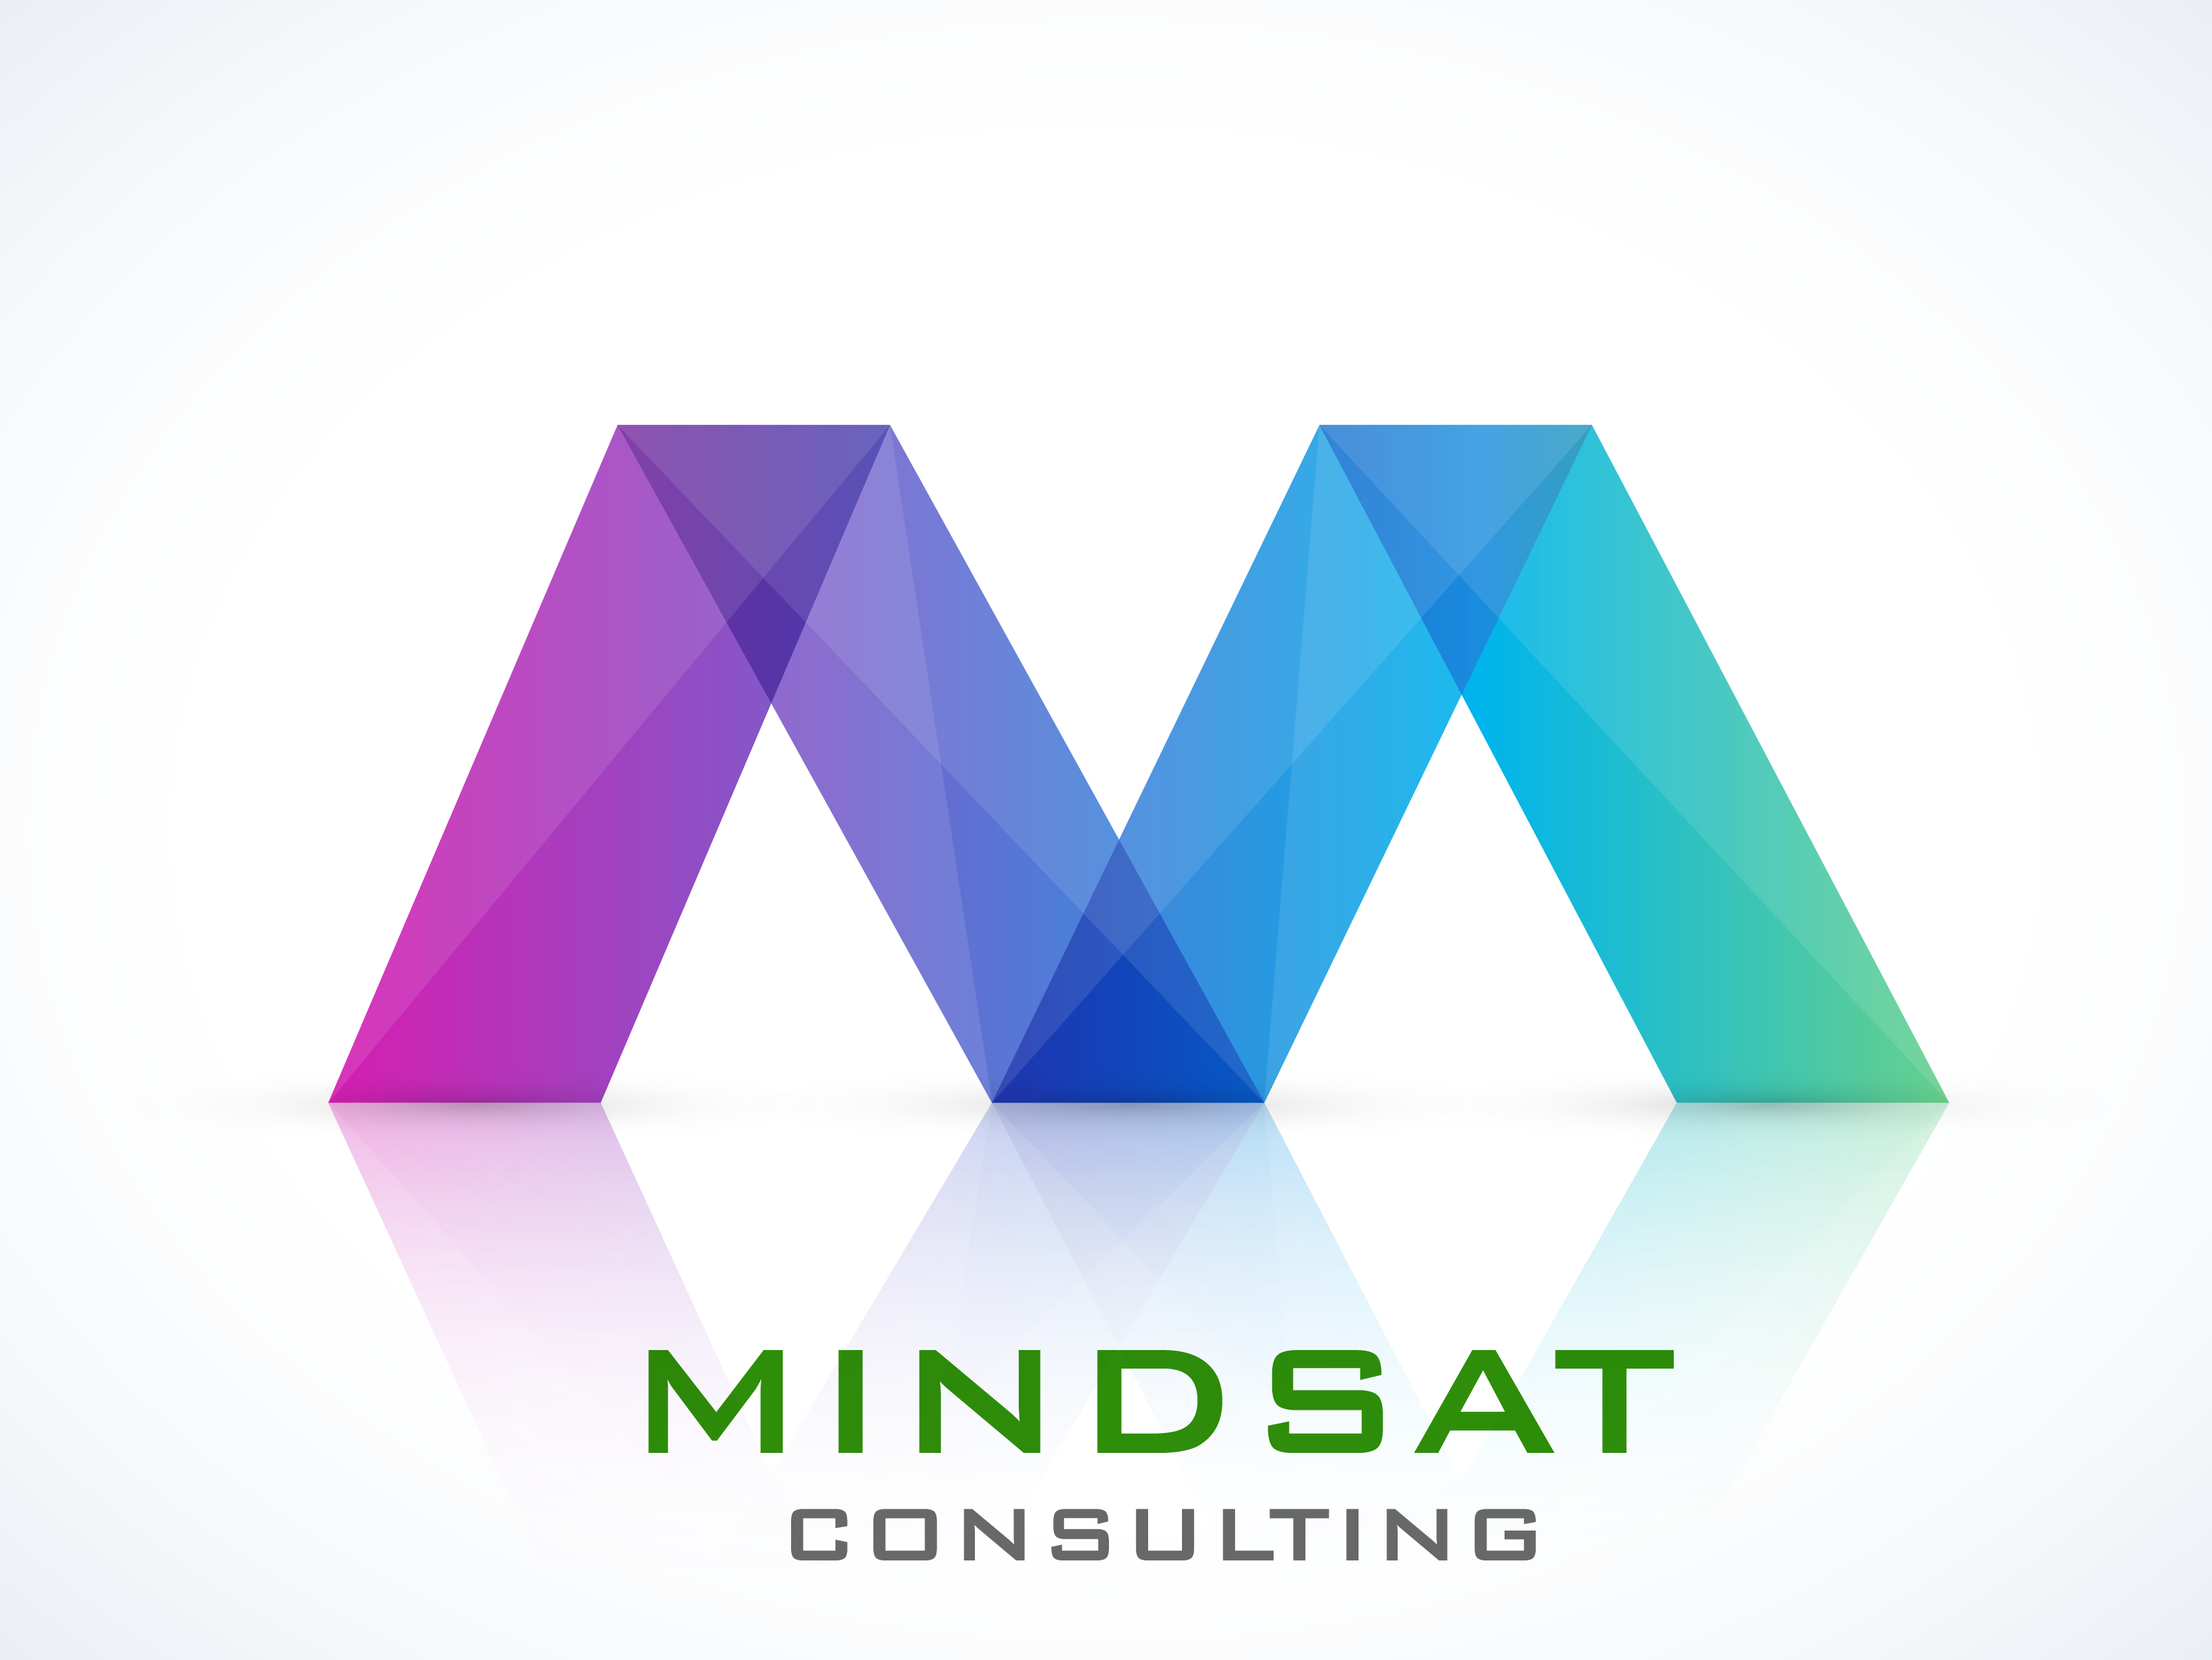 MINDSaT Training & Consulting